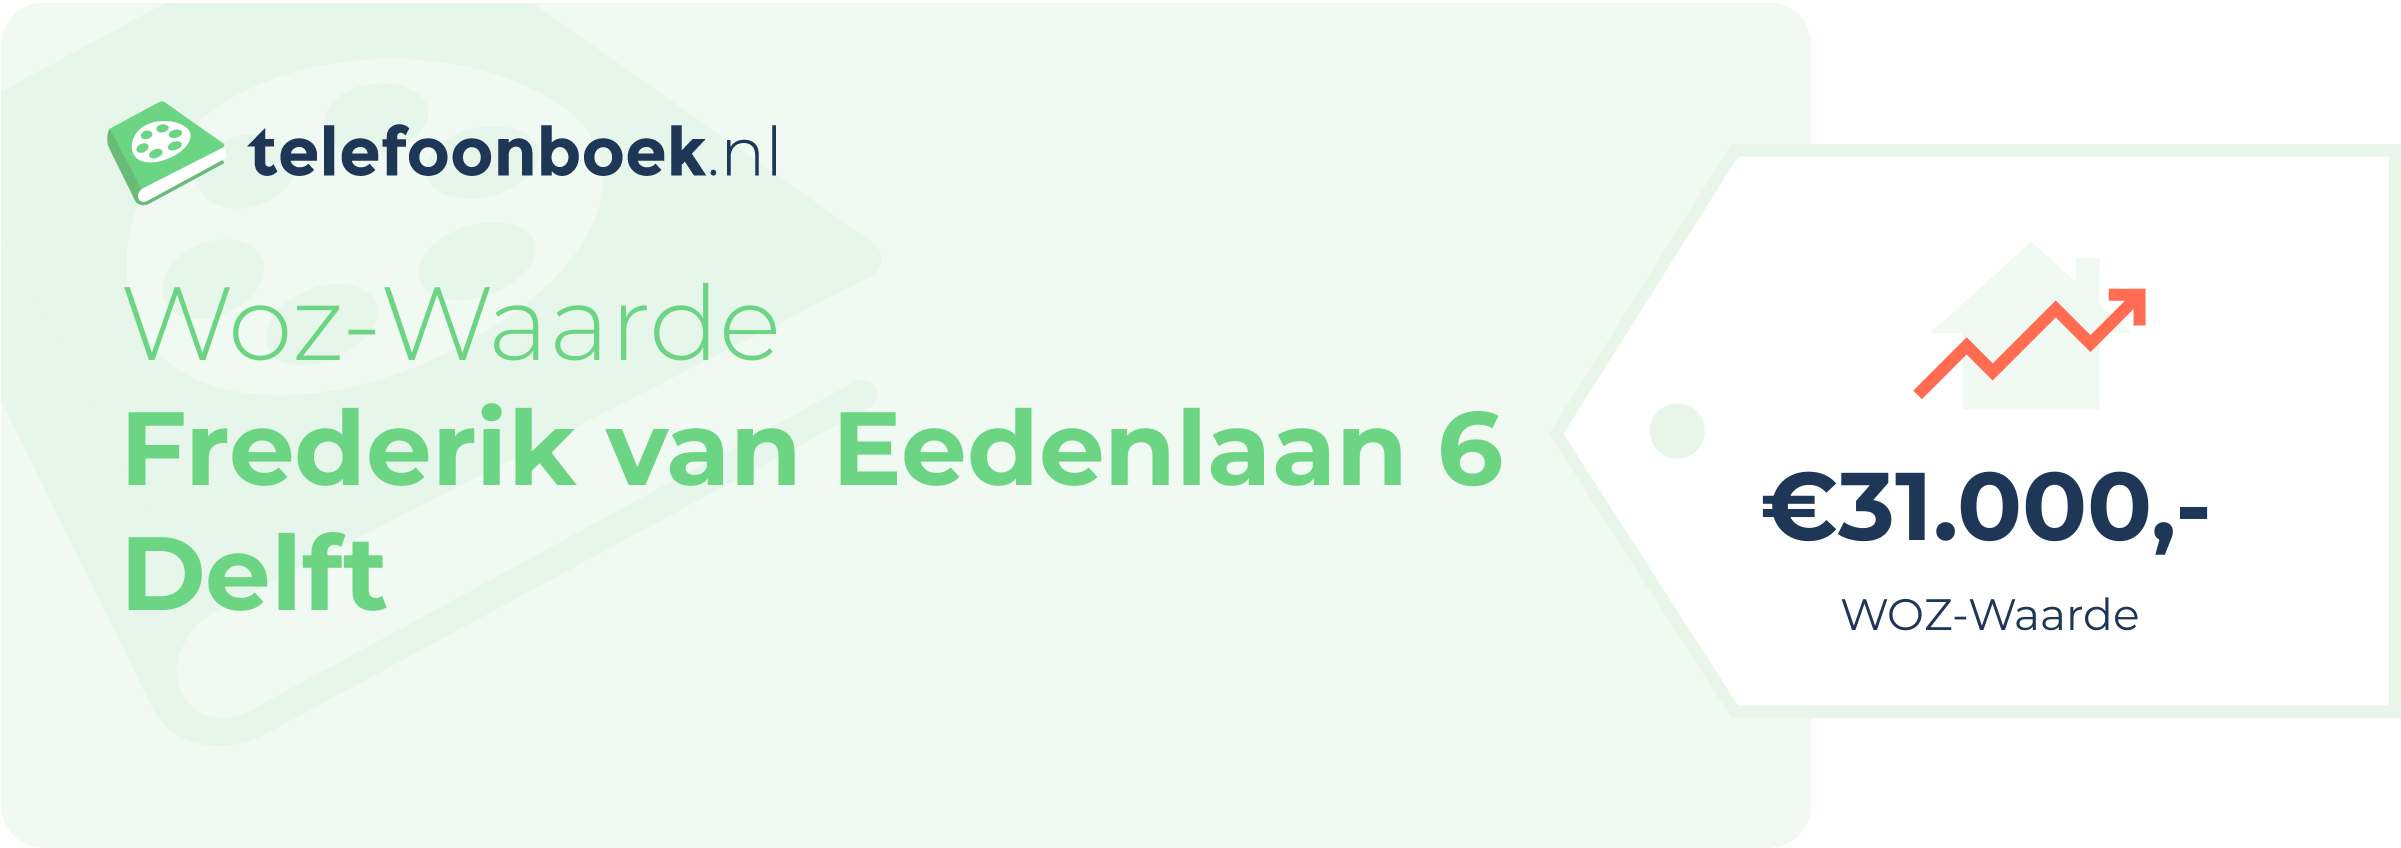 WOZ-waarde Frederik Van Eedenlaan 6 Delft